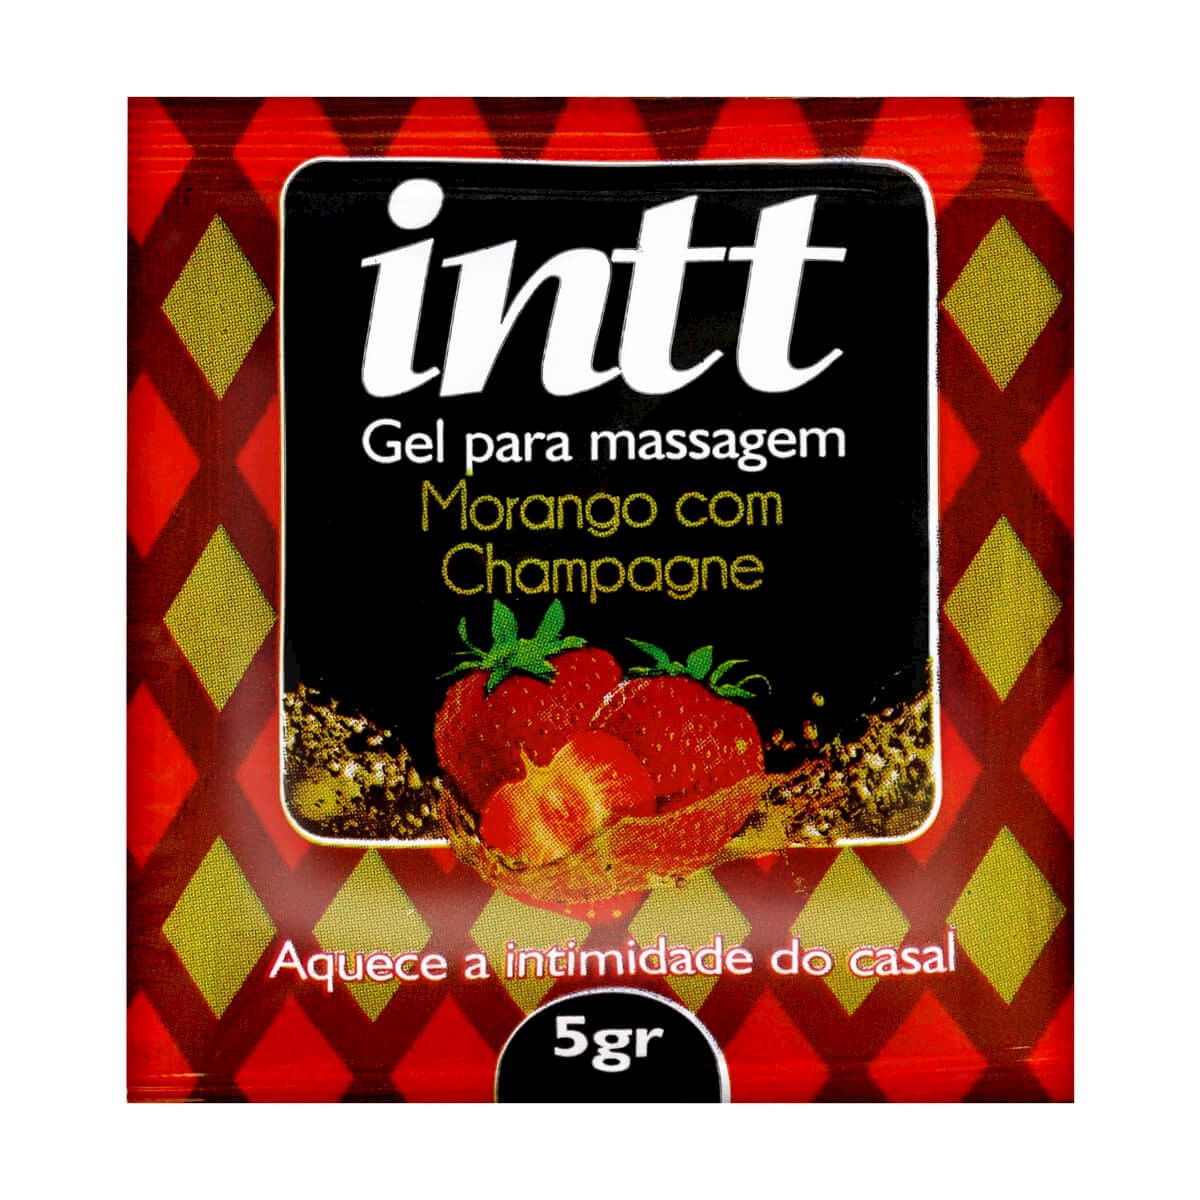 Gel Morango com Champagne Dose Única 5g INTT - Miess